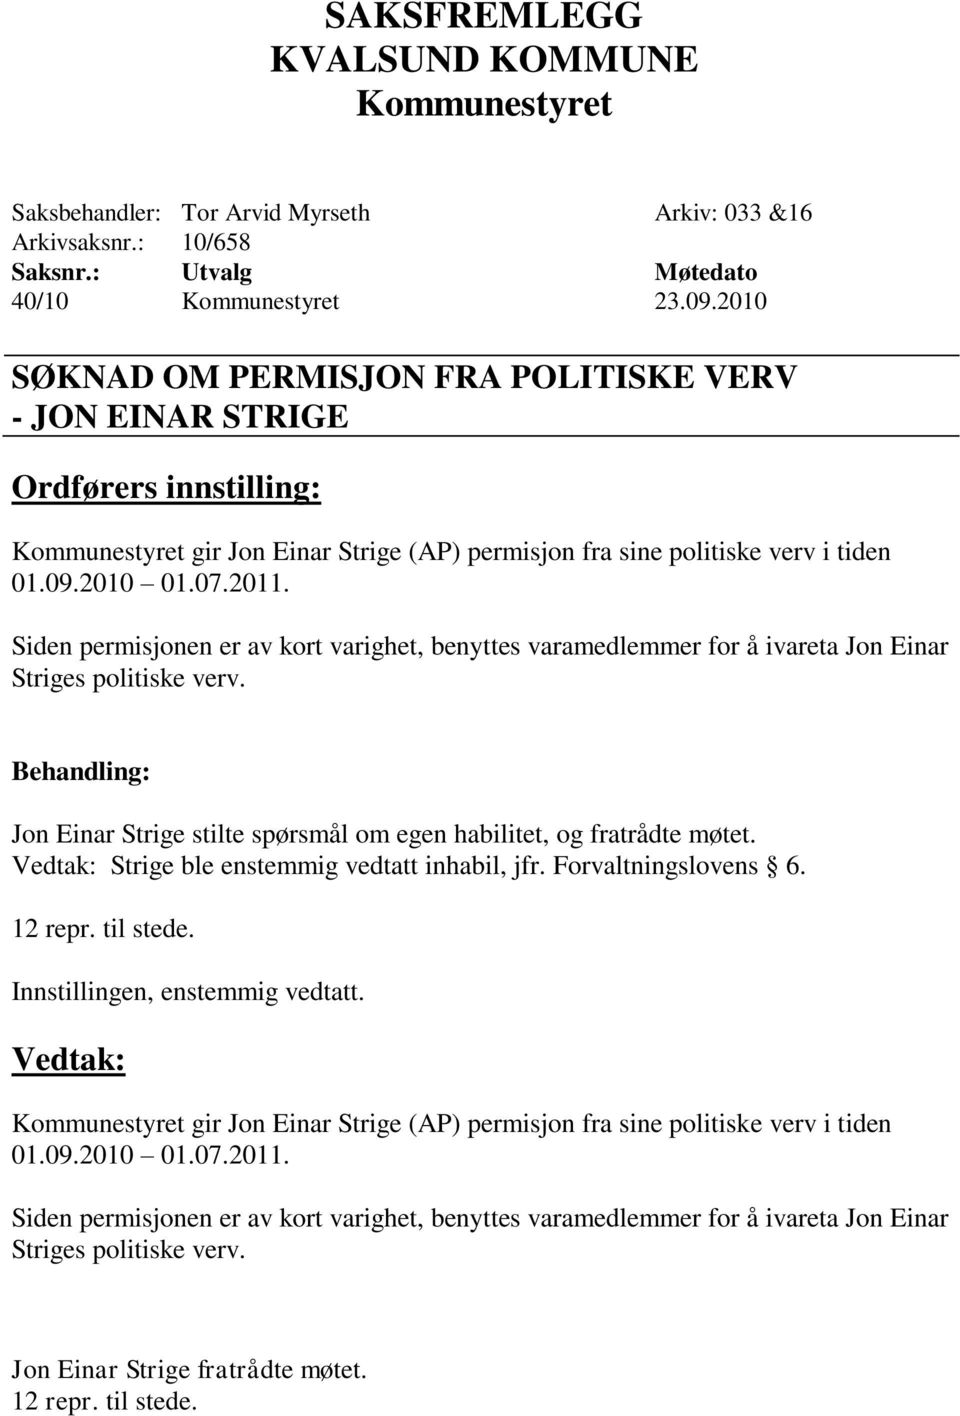 Siden permisjonen er av kort varighet, benyttes varamedlemmer for å ivareta Jon Einar Striges politiske verv. Jon Einar Strige stilte spørsmål om egen habilitet, og fratrådte møtet.